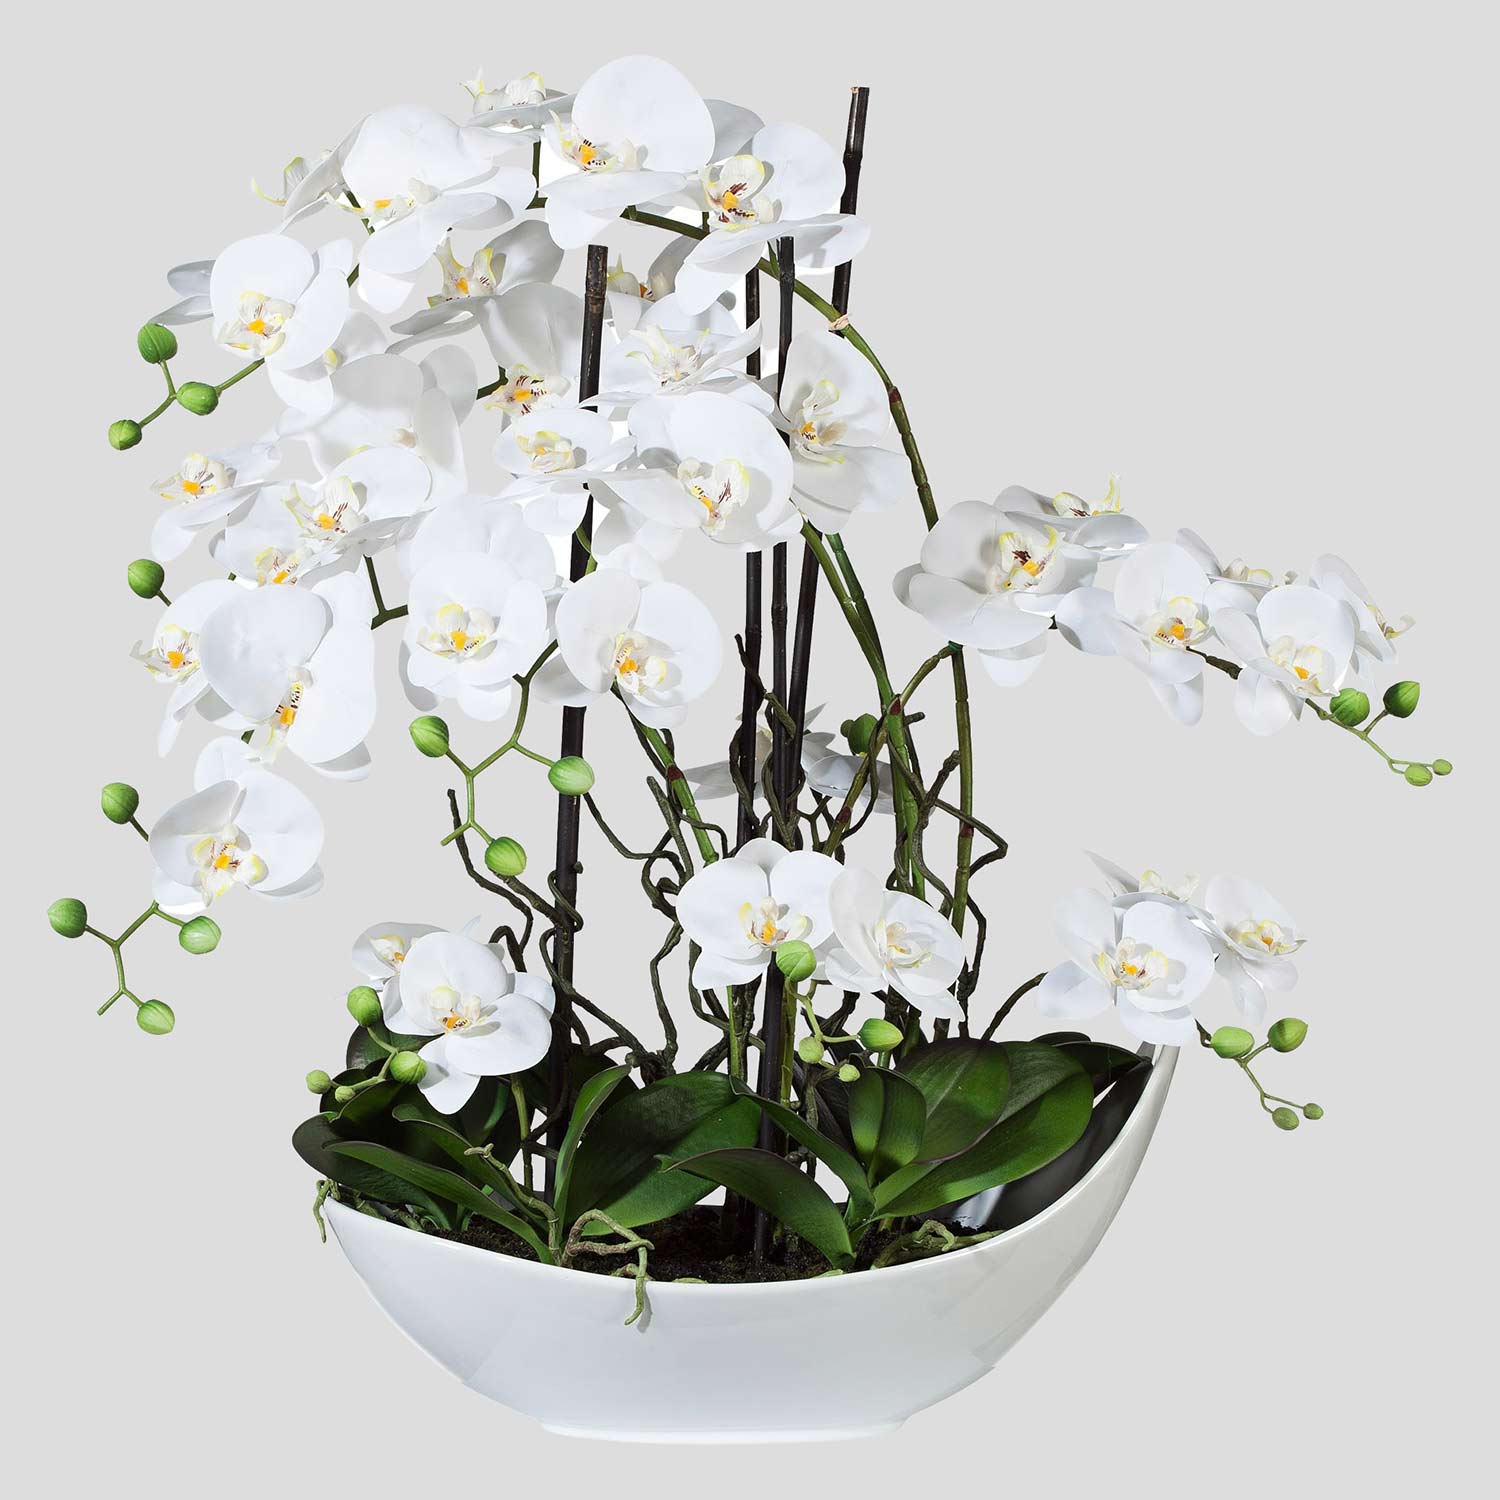 Fehér színű mű orchidea, csónak formájú kerámia kaspóban.